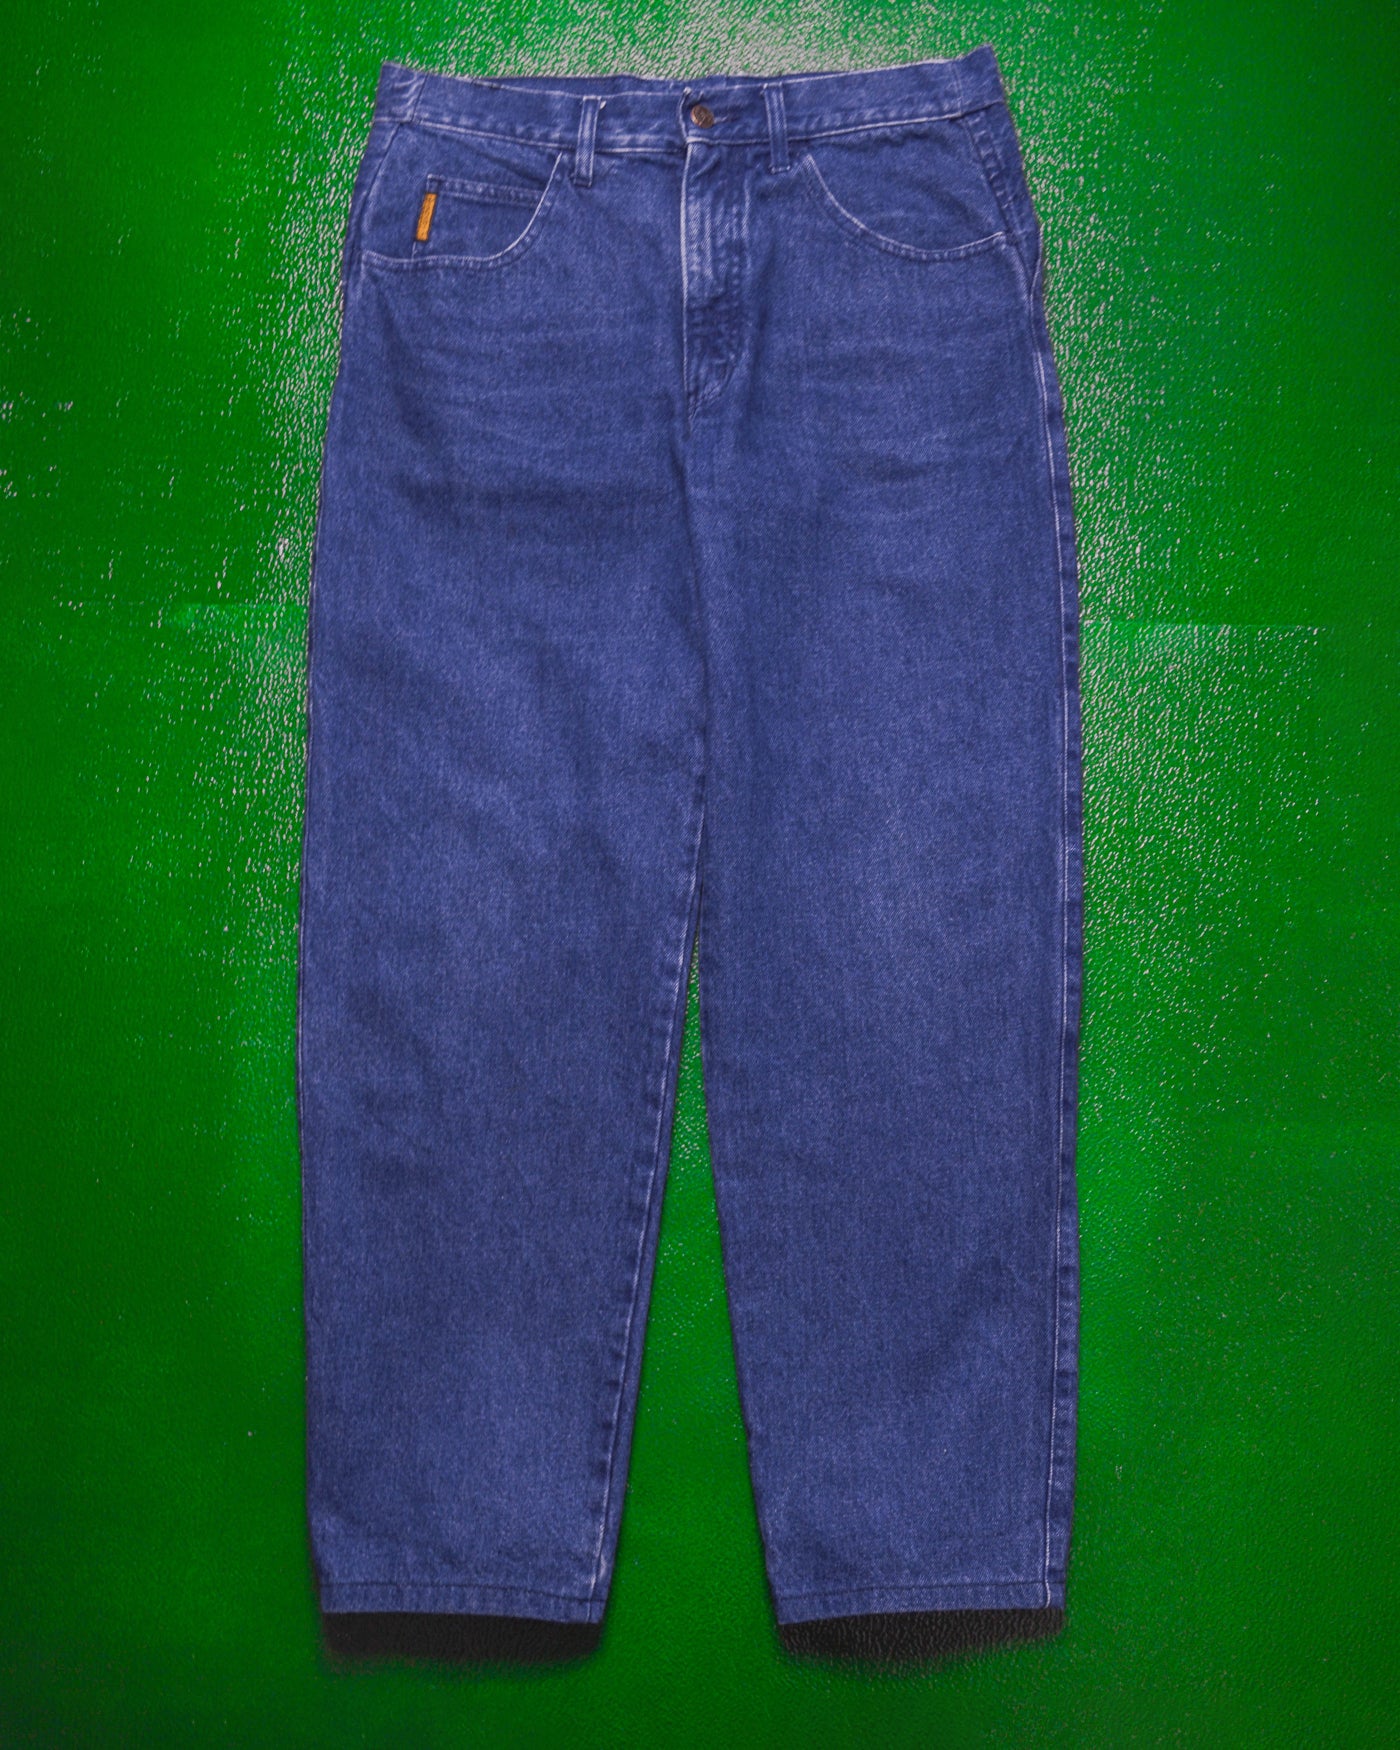 90s Dark Wash Jeans (32)